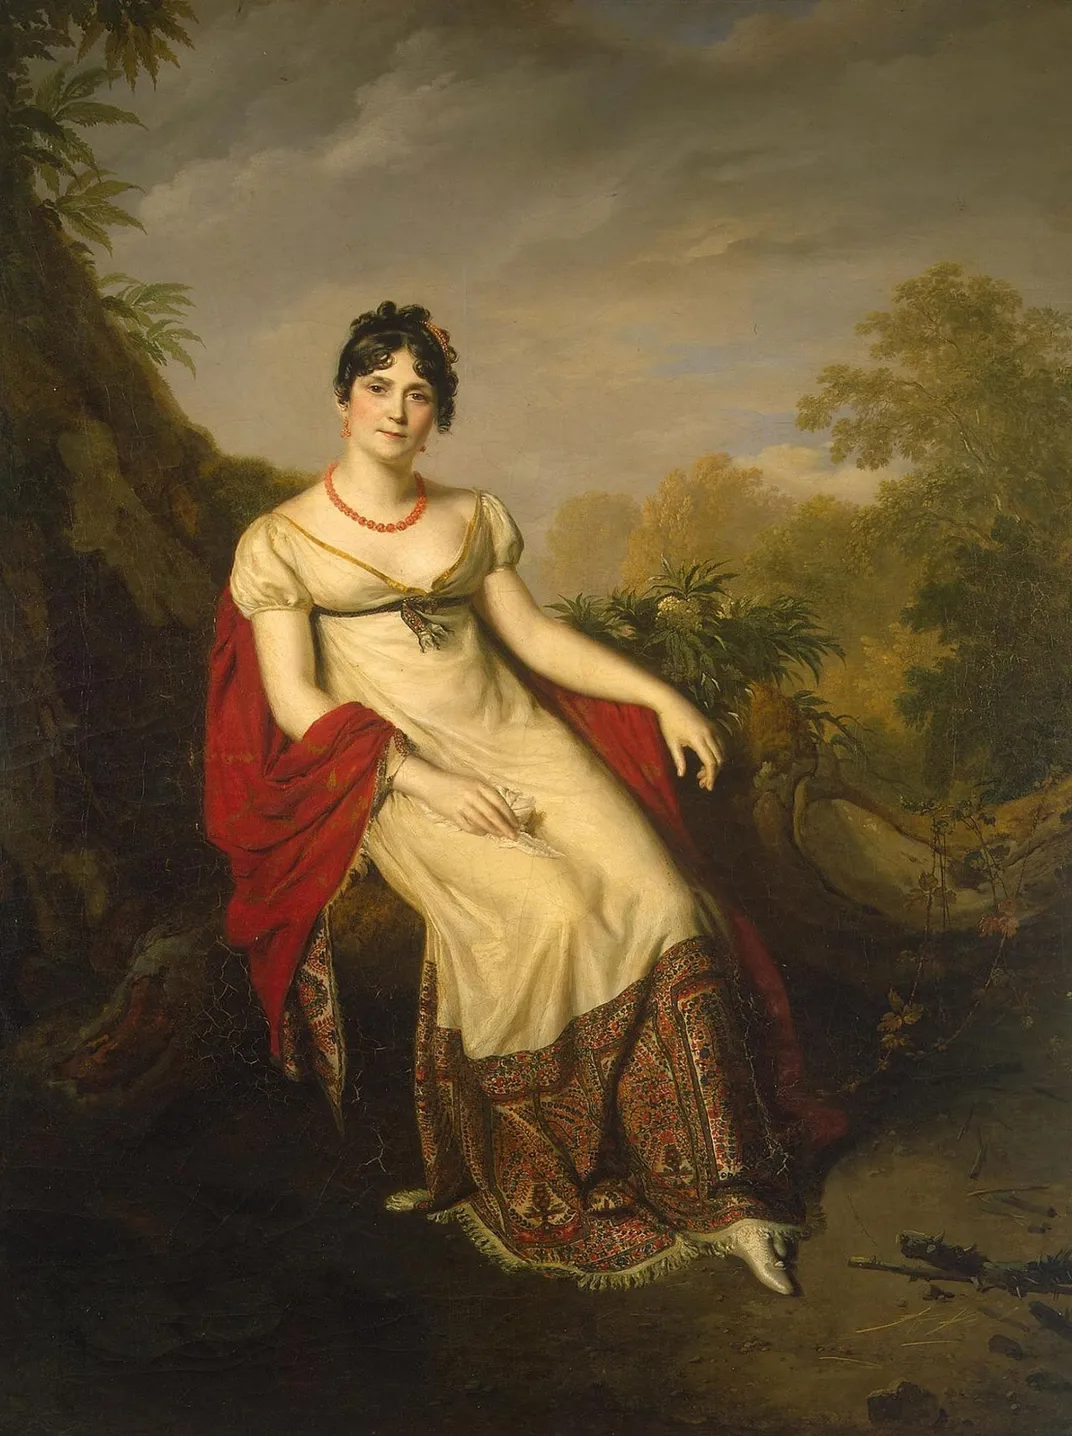 A circa 1812 portrait of Joséphine